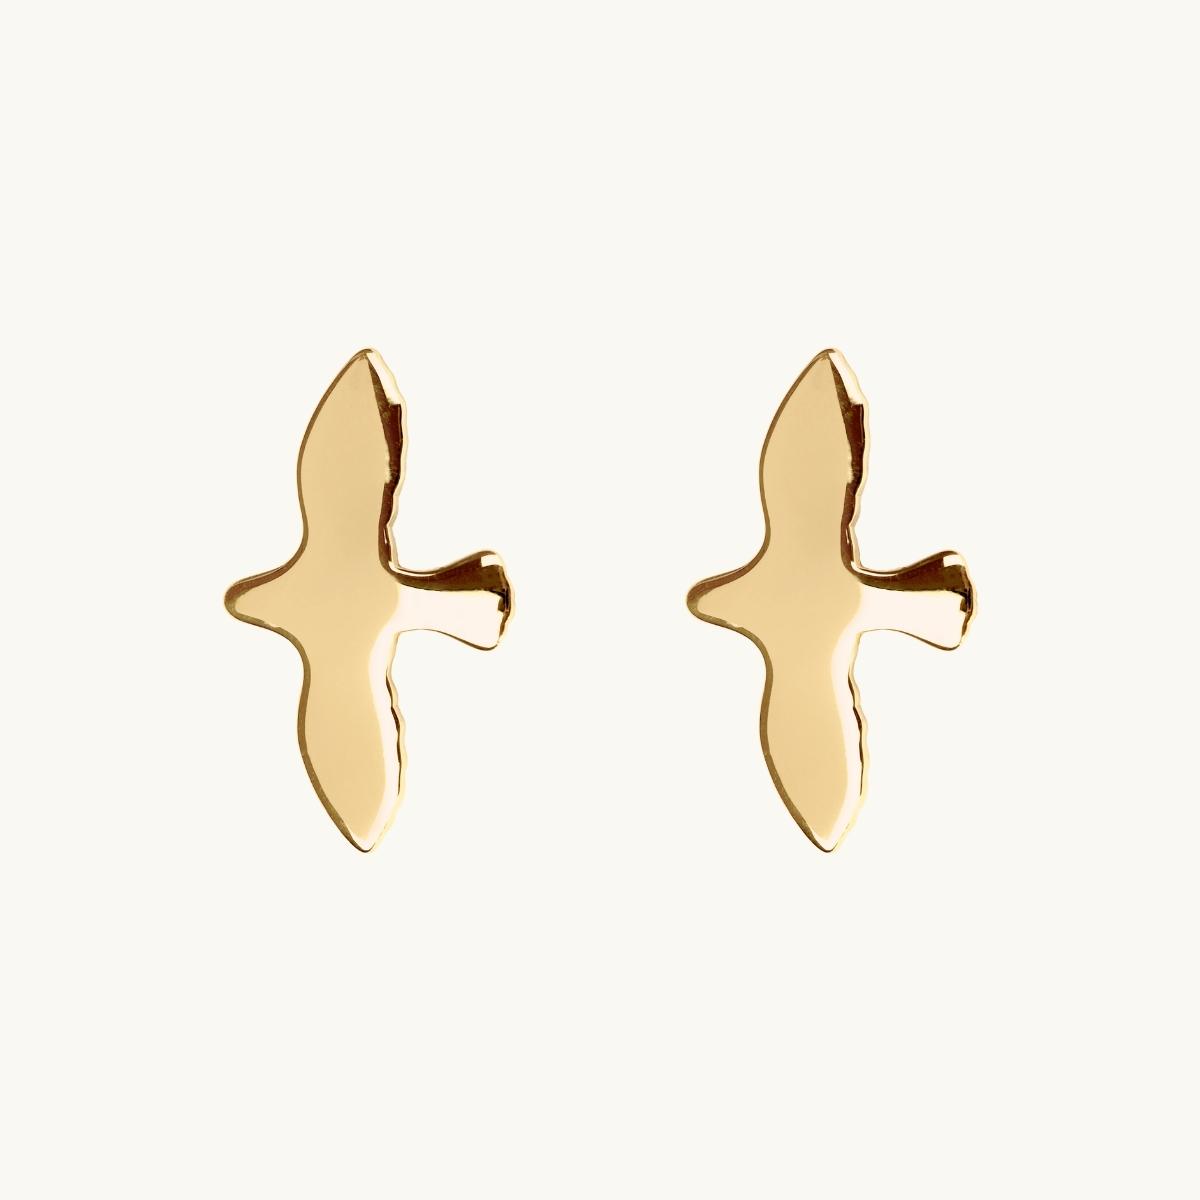 Earrings in 18K gold plated brass in shape of a dove